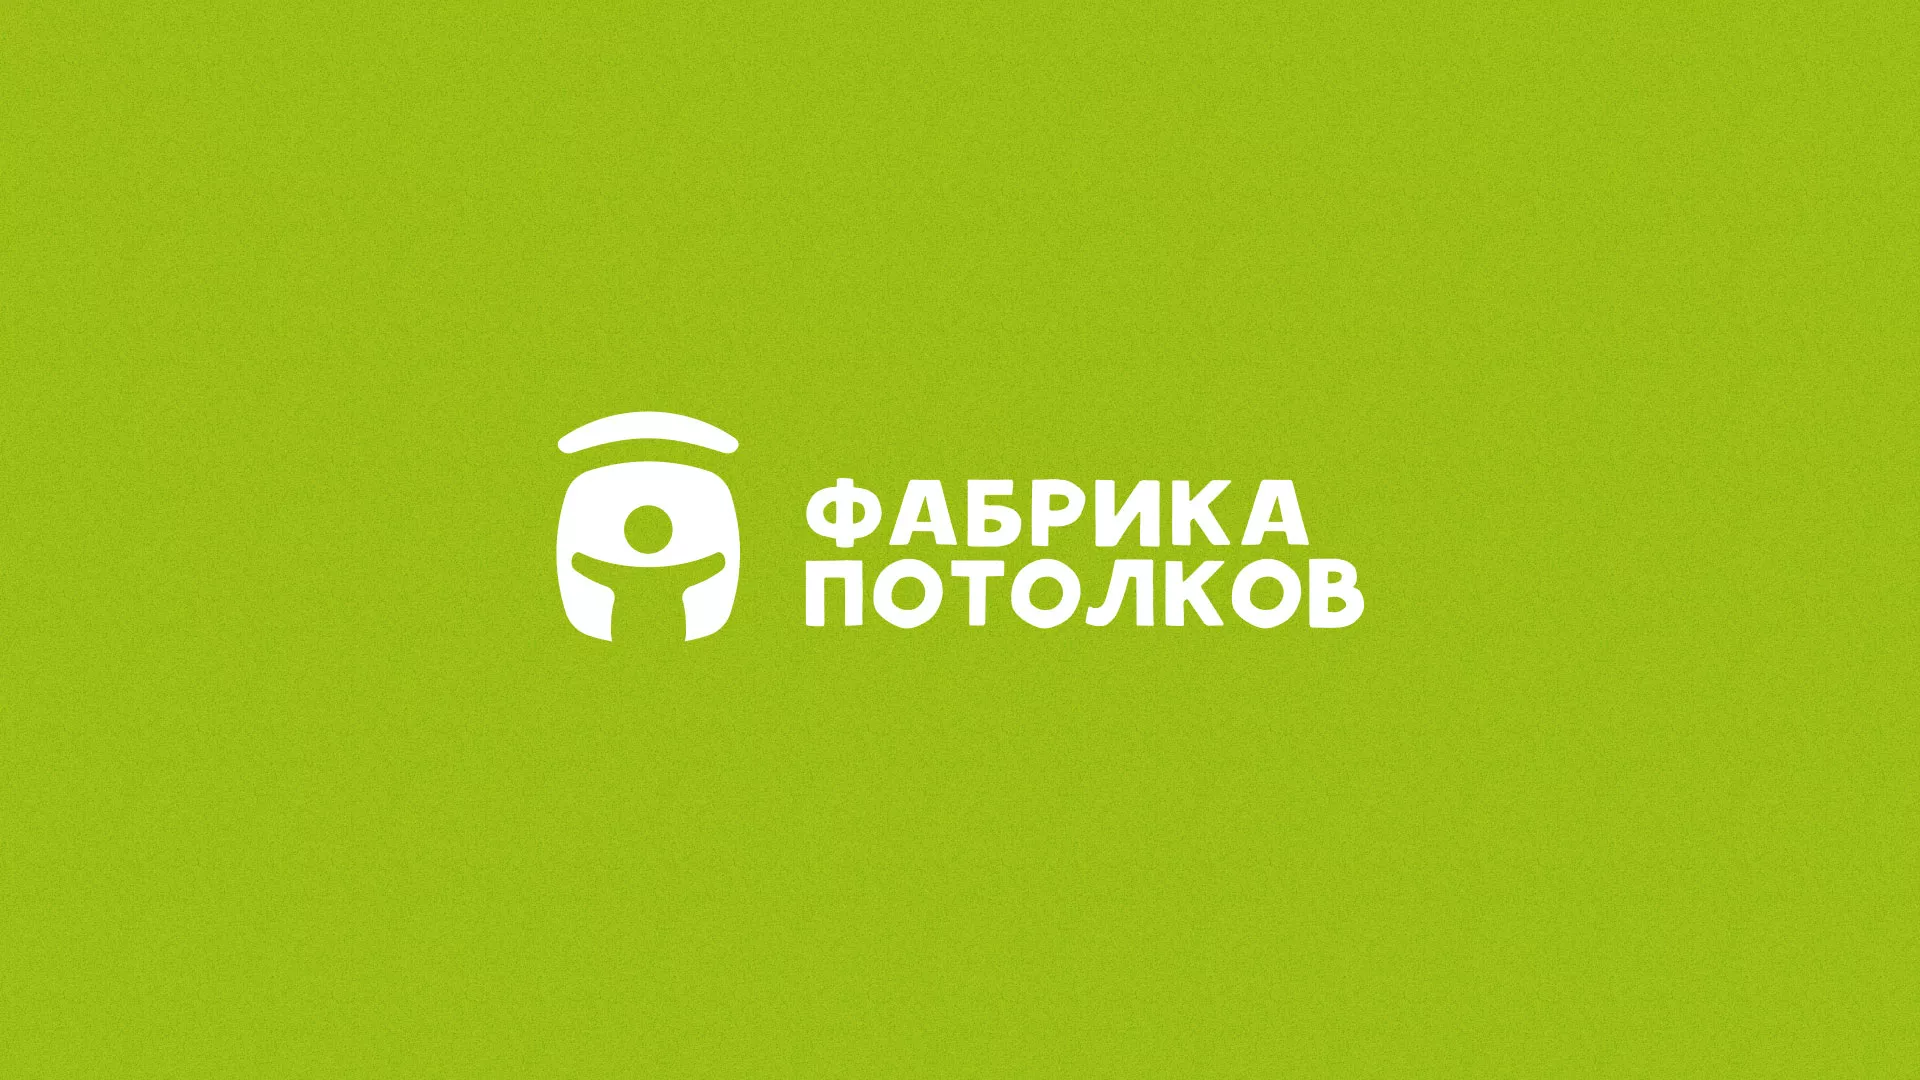 Разработка логотипа для производства натяжных потолков в Урюпинске